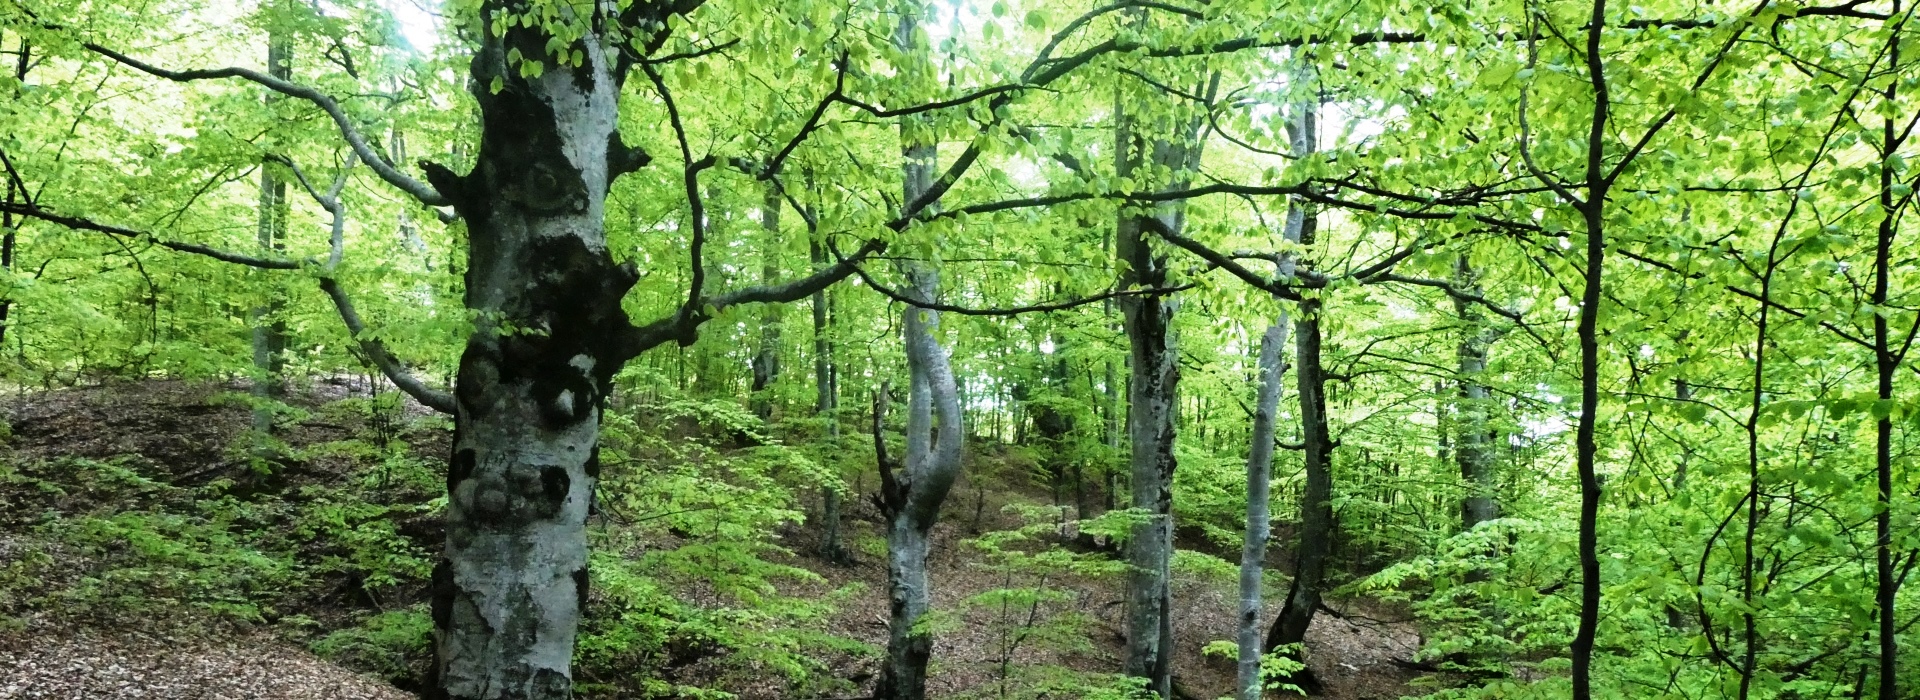 Für einmal noch rumänische Urwälder sehen!